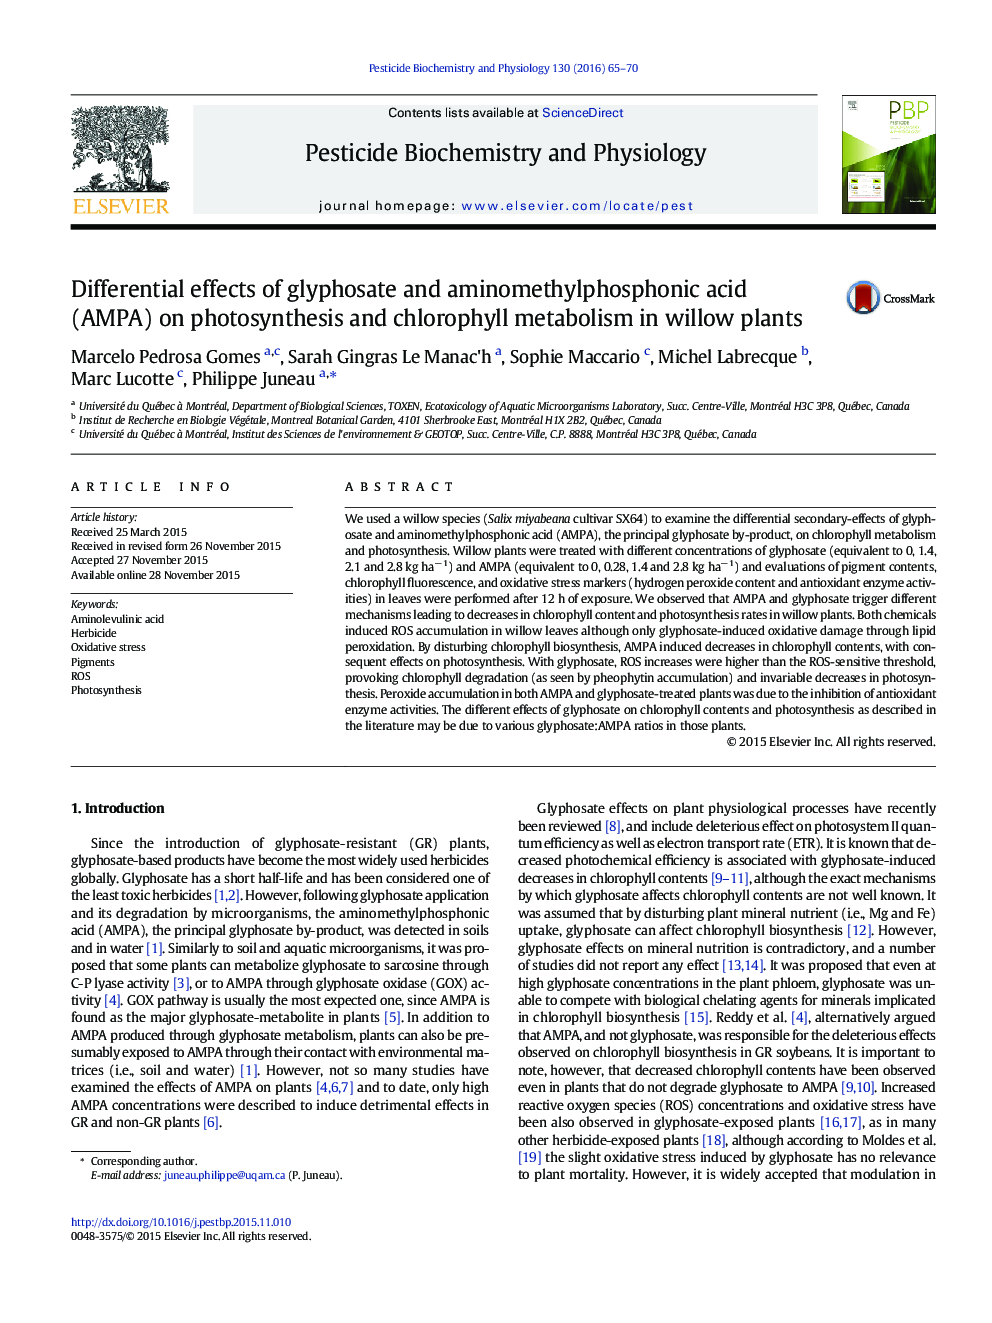 اثر متفاوت گلیفوسیت و aminomethylphosphonic اسید (AMPA) بر فتوسنتز و متابولیسم کلروفیل در گیاهان willow